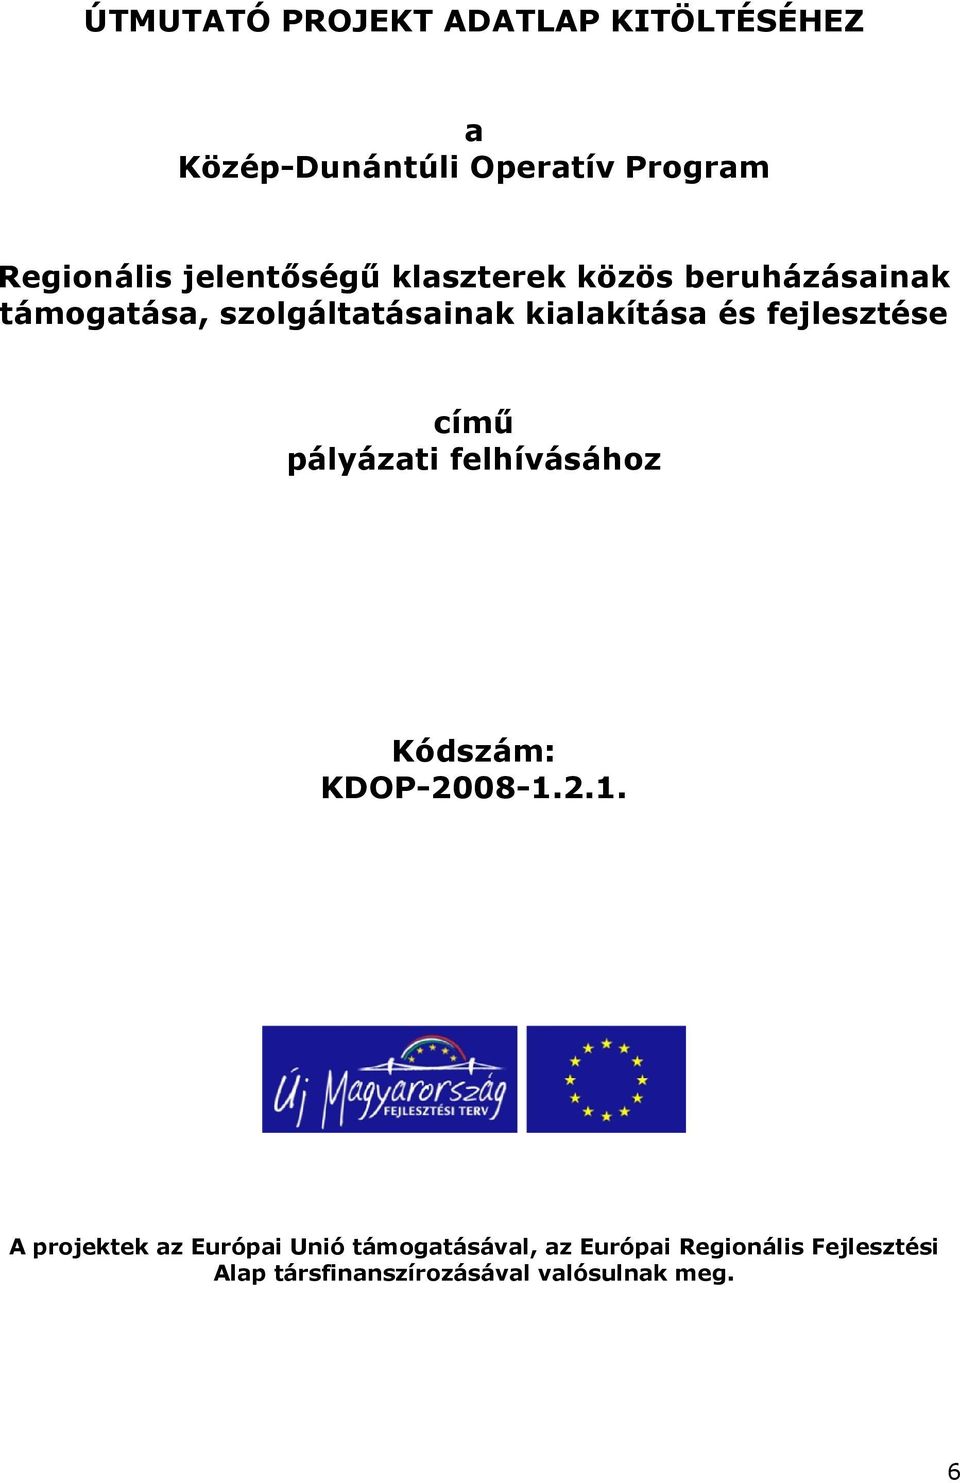 fejlesztése című pályázati felhívásához Kódszám: KDOP-2008-1.